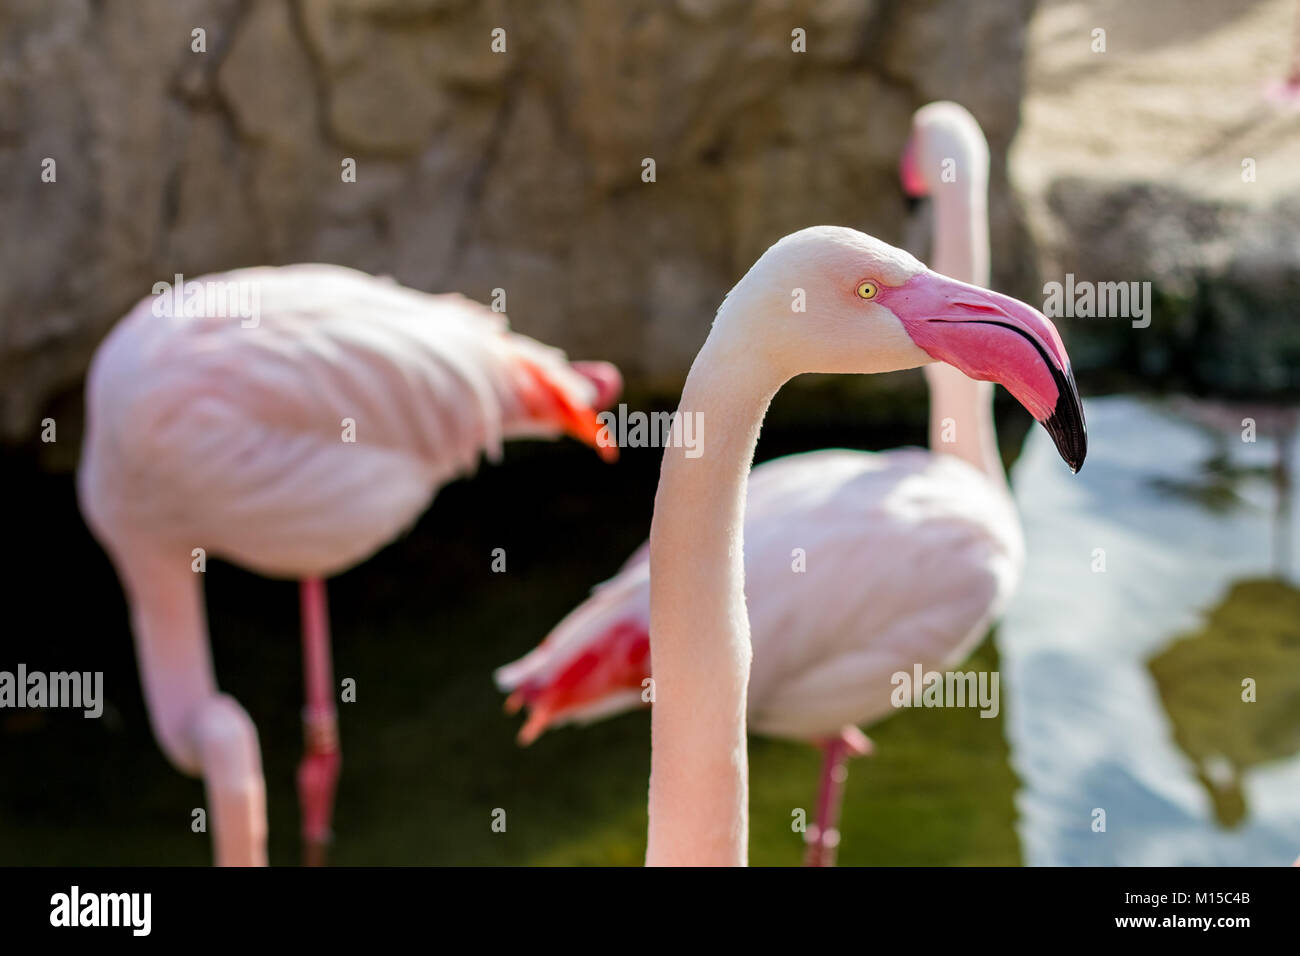 Detail der schönen Flamingo phoenicopterus Vogel Leiter, rosa Farbe,  Porträt Stockfotografie - Alamy